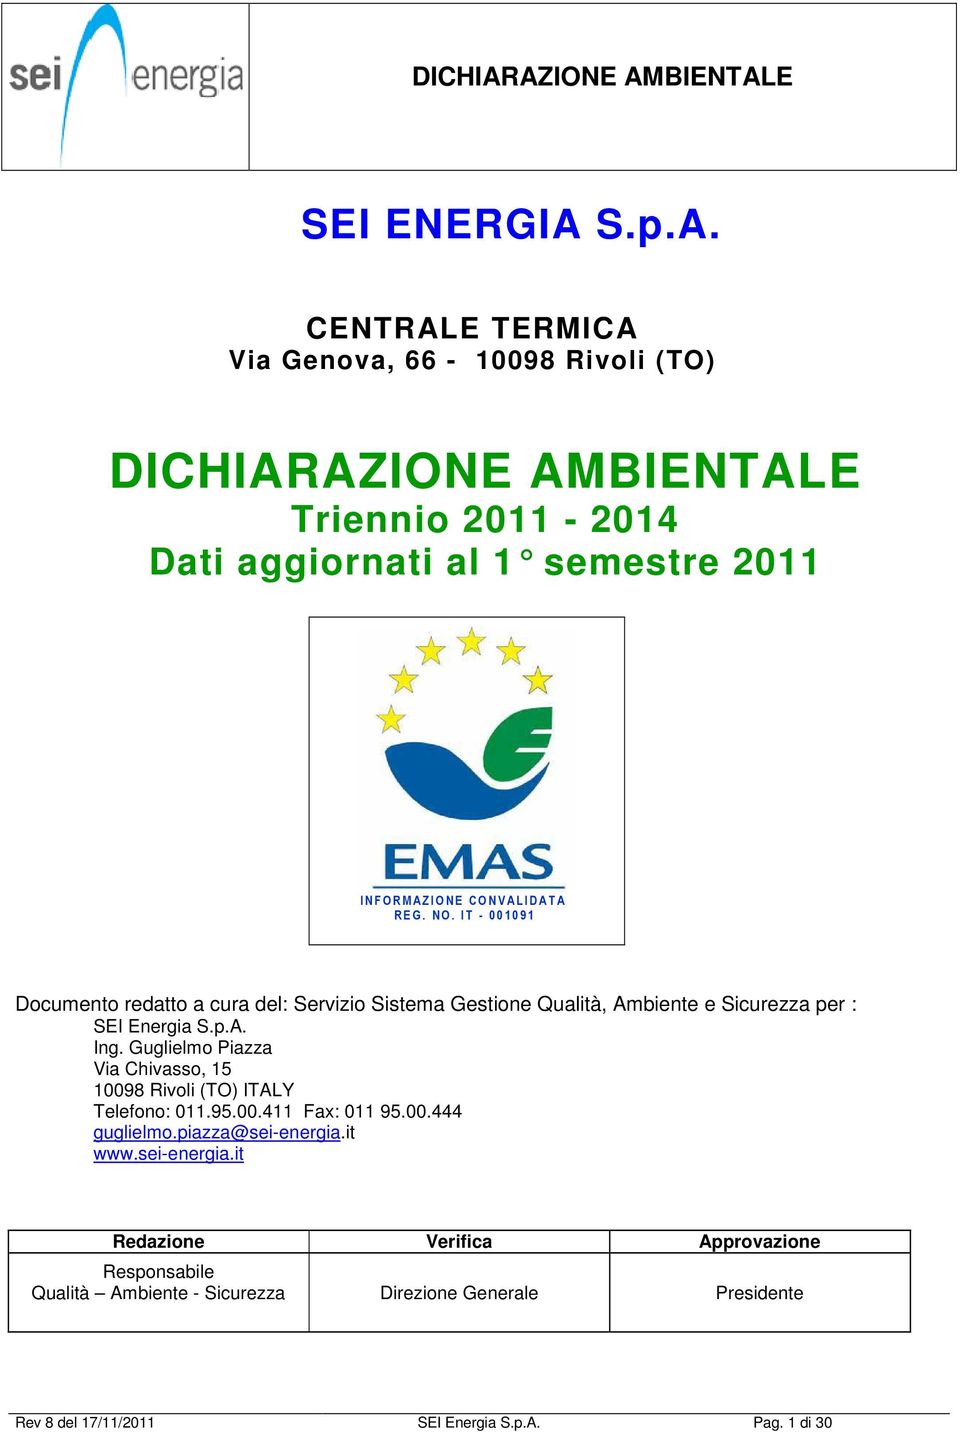 CENTRALE TERMICA Via Genova, 66-10098 Rivoli (TO) DICHIARAZIONE AMBIENTALE Triennio 2011-2014 Dati aggiornati al 1 semestre 2011 I N F O R M A Z I O N E C O N V